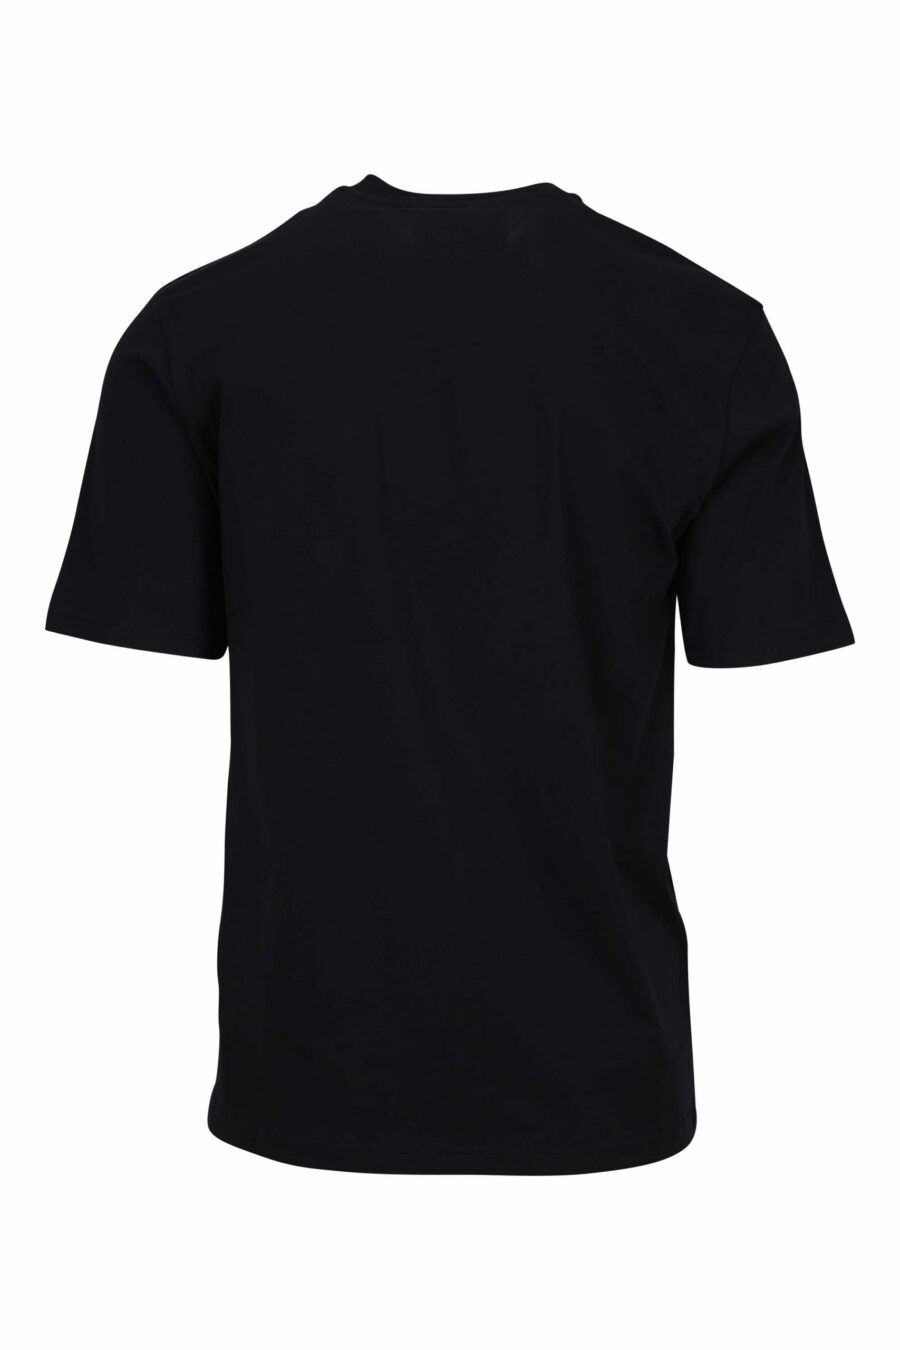 Camiseta negra con minilogo oso dibujo - 667113767819 1 scaled